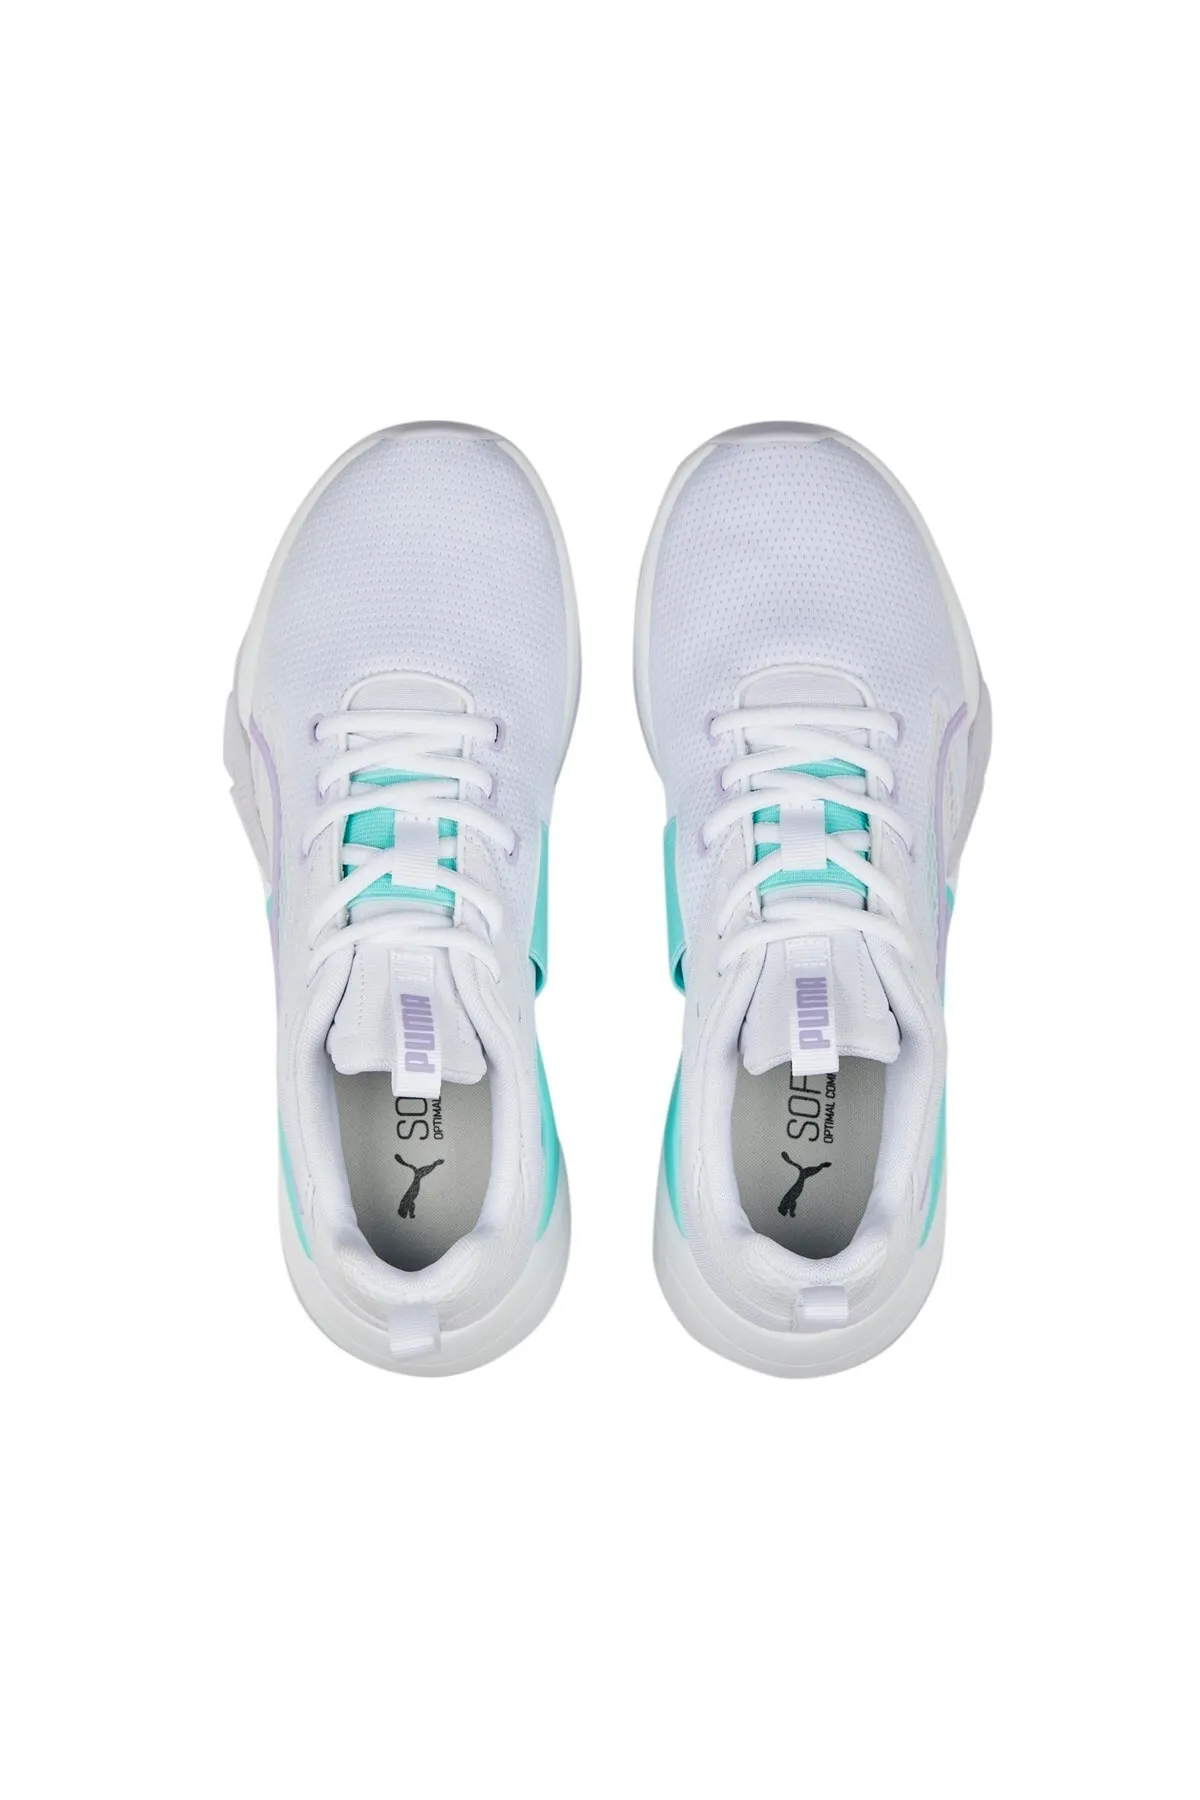 Zora Sneaker Kadın Spor Ayakkabı 386274-Lila - Thumbnail